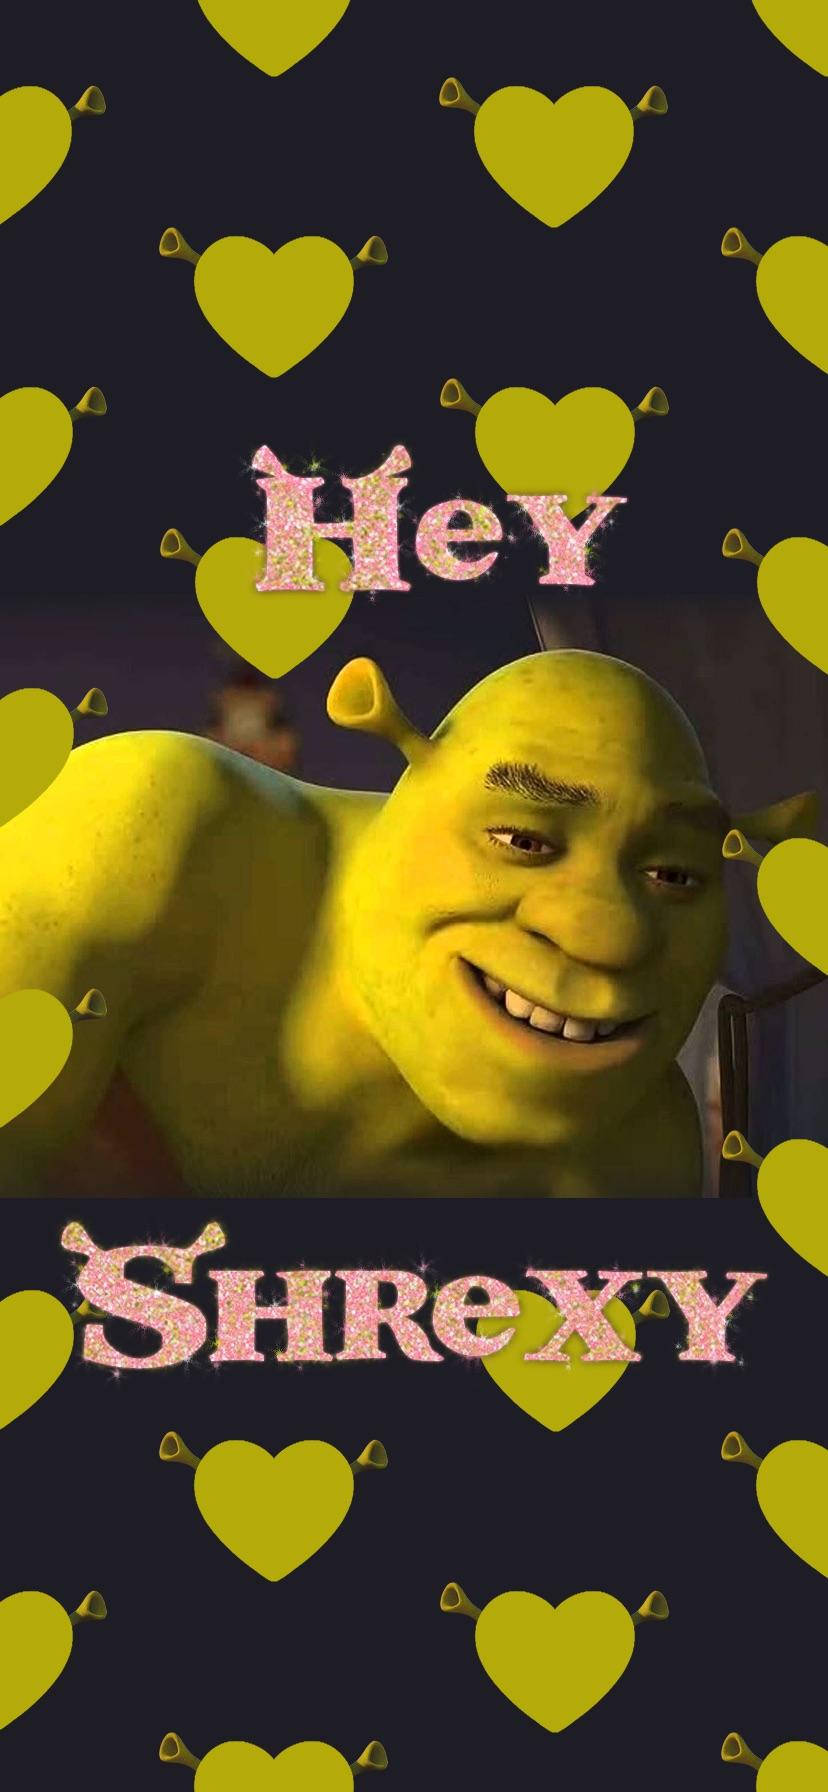 Shrek Hey Shrexy Background